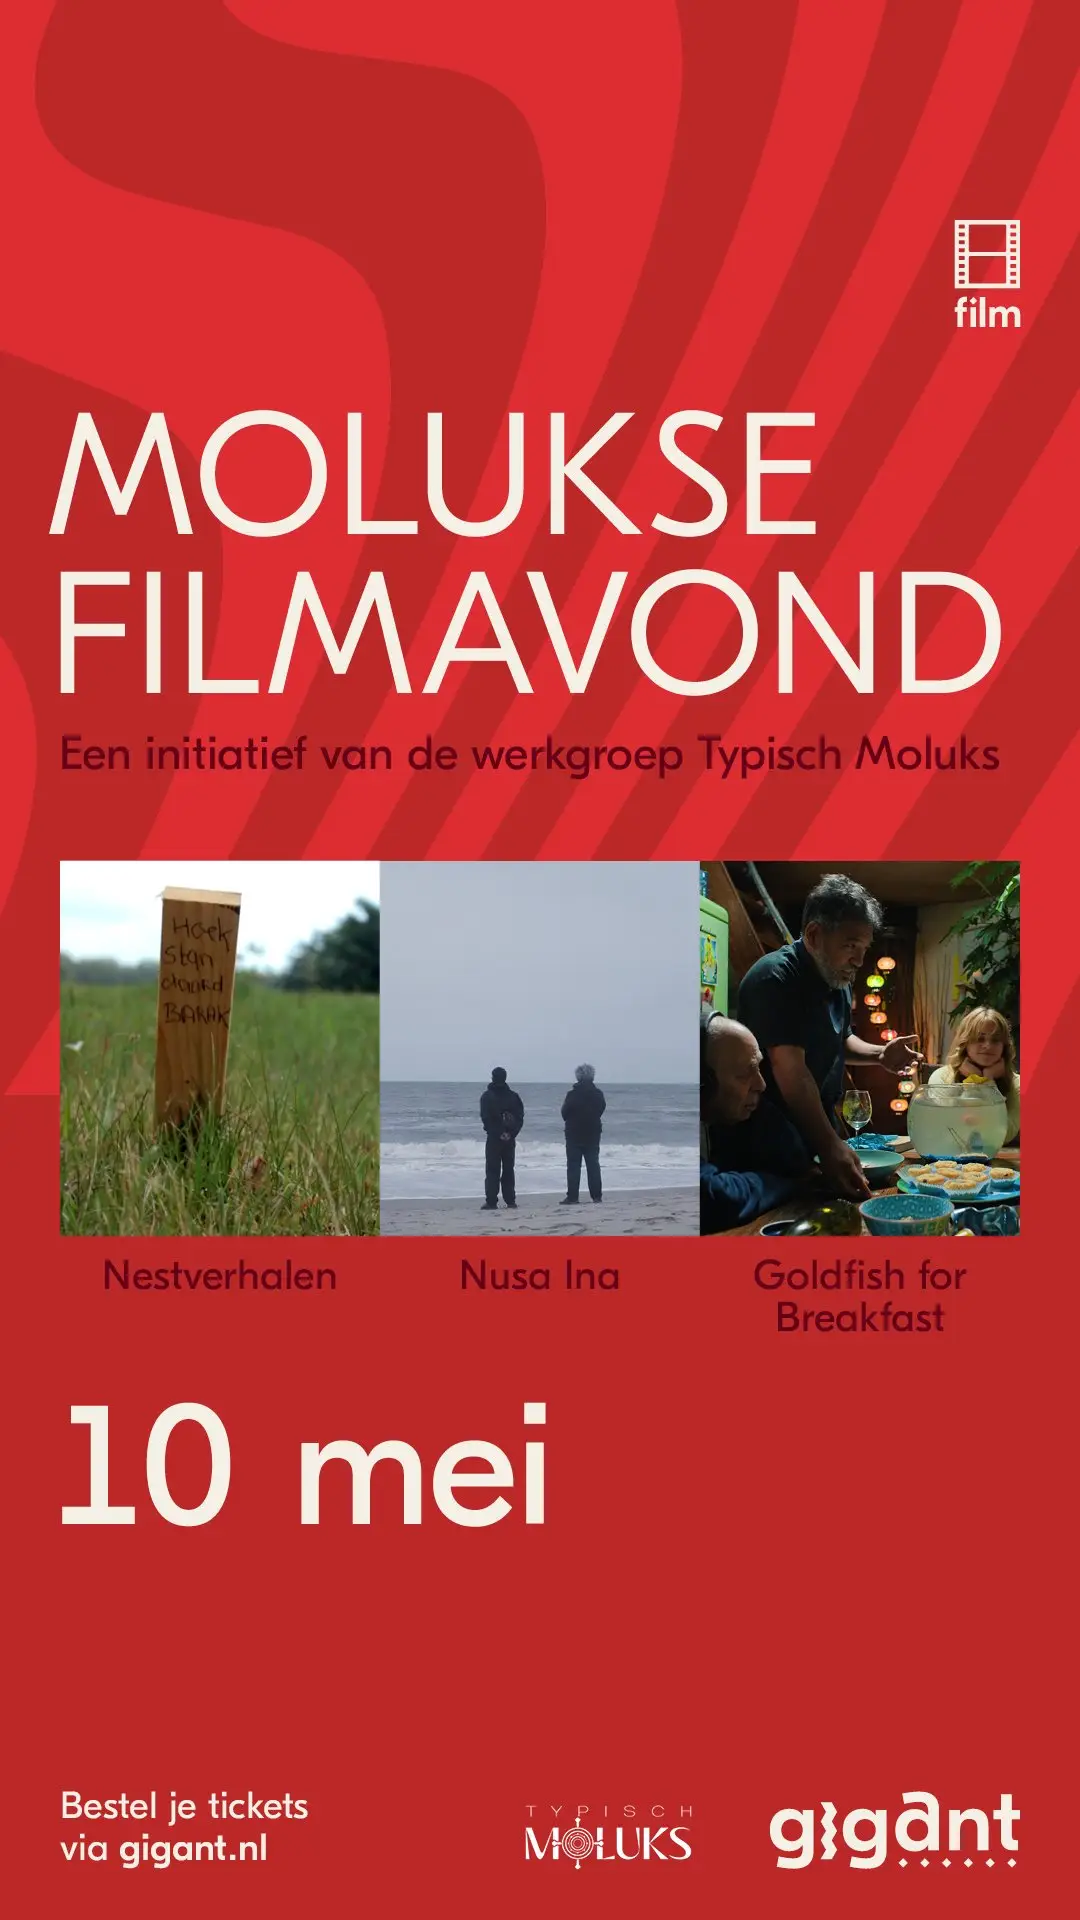 Molukse Filmavond | Een initiatief van de werkgroep Typisch Moluks